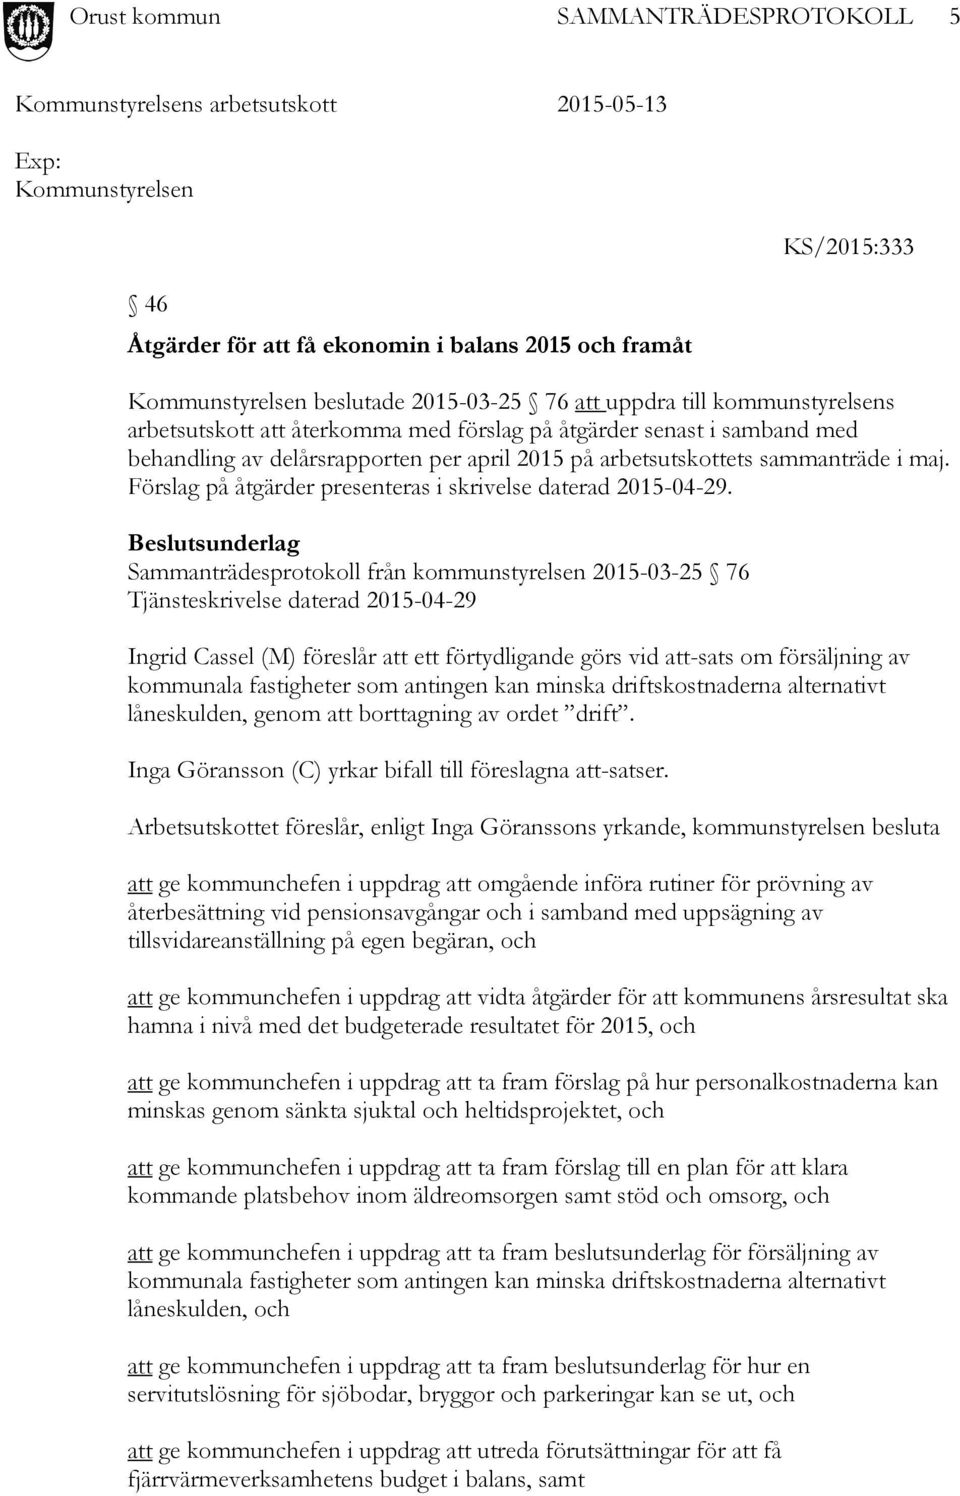 Beslutsunderlag Sammanträdesprotokoll från kommunstyrelsen 2015-03-25 76 Tjänsteskrivelse daterad 2015-04-29 Ingrid Cassel (M) föreslår att ett förtydligande görs vid att-sats om försäljning av